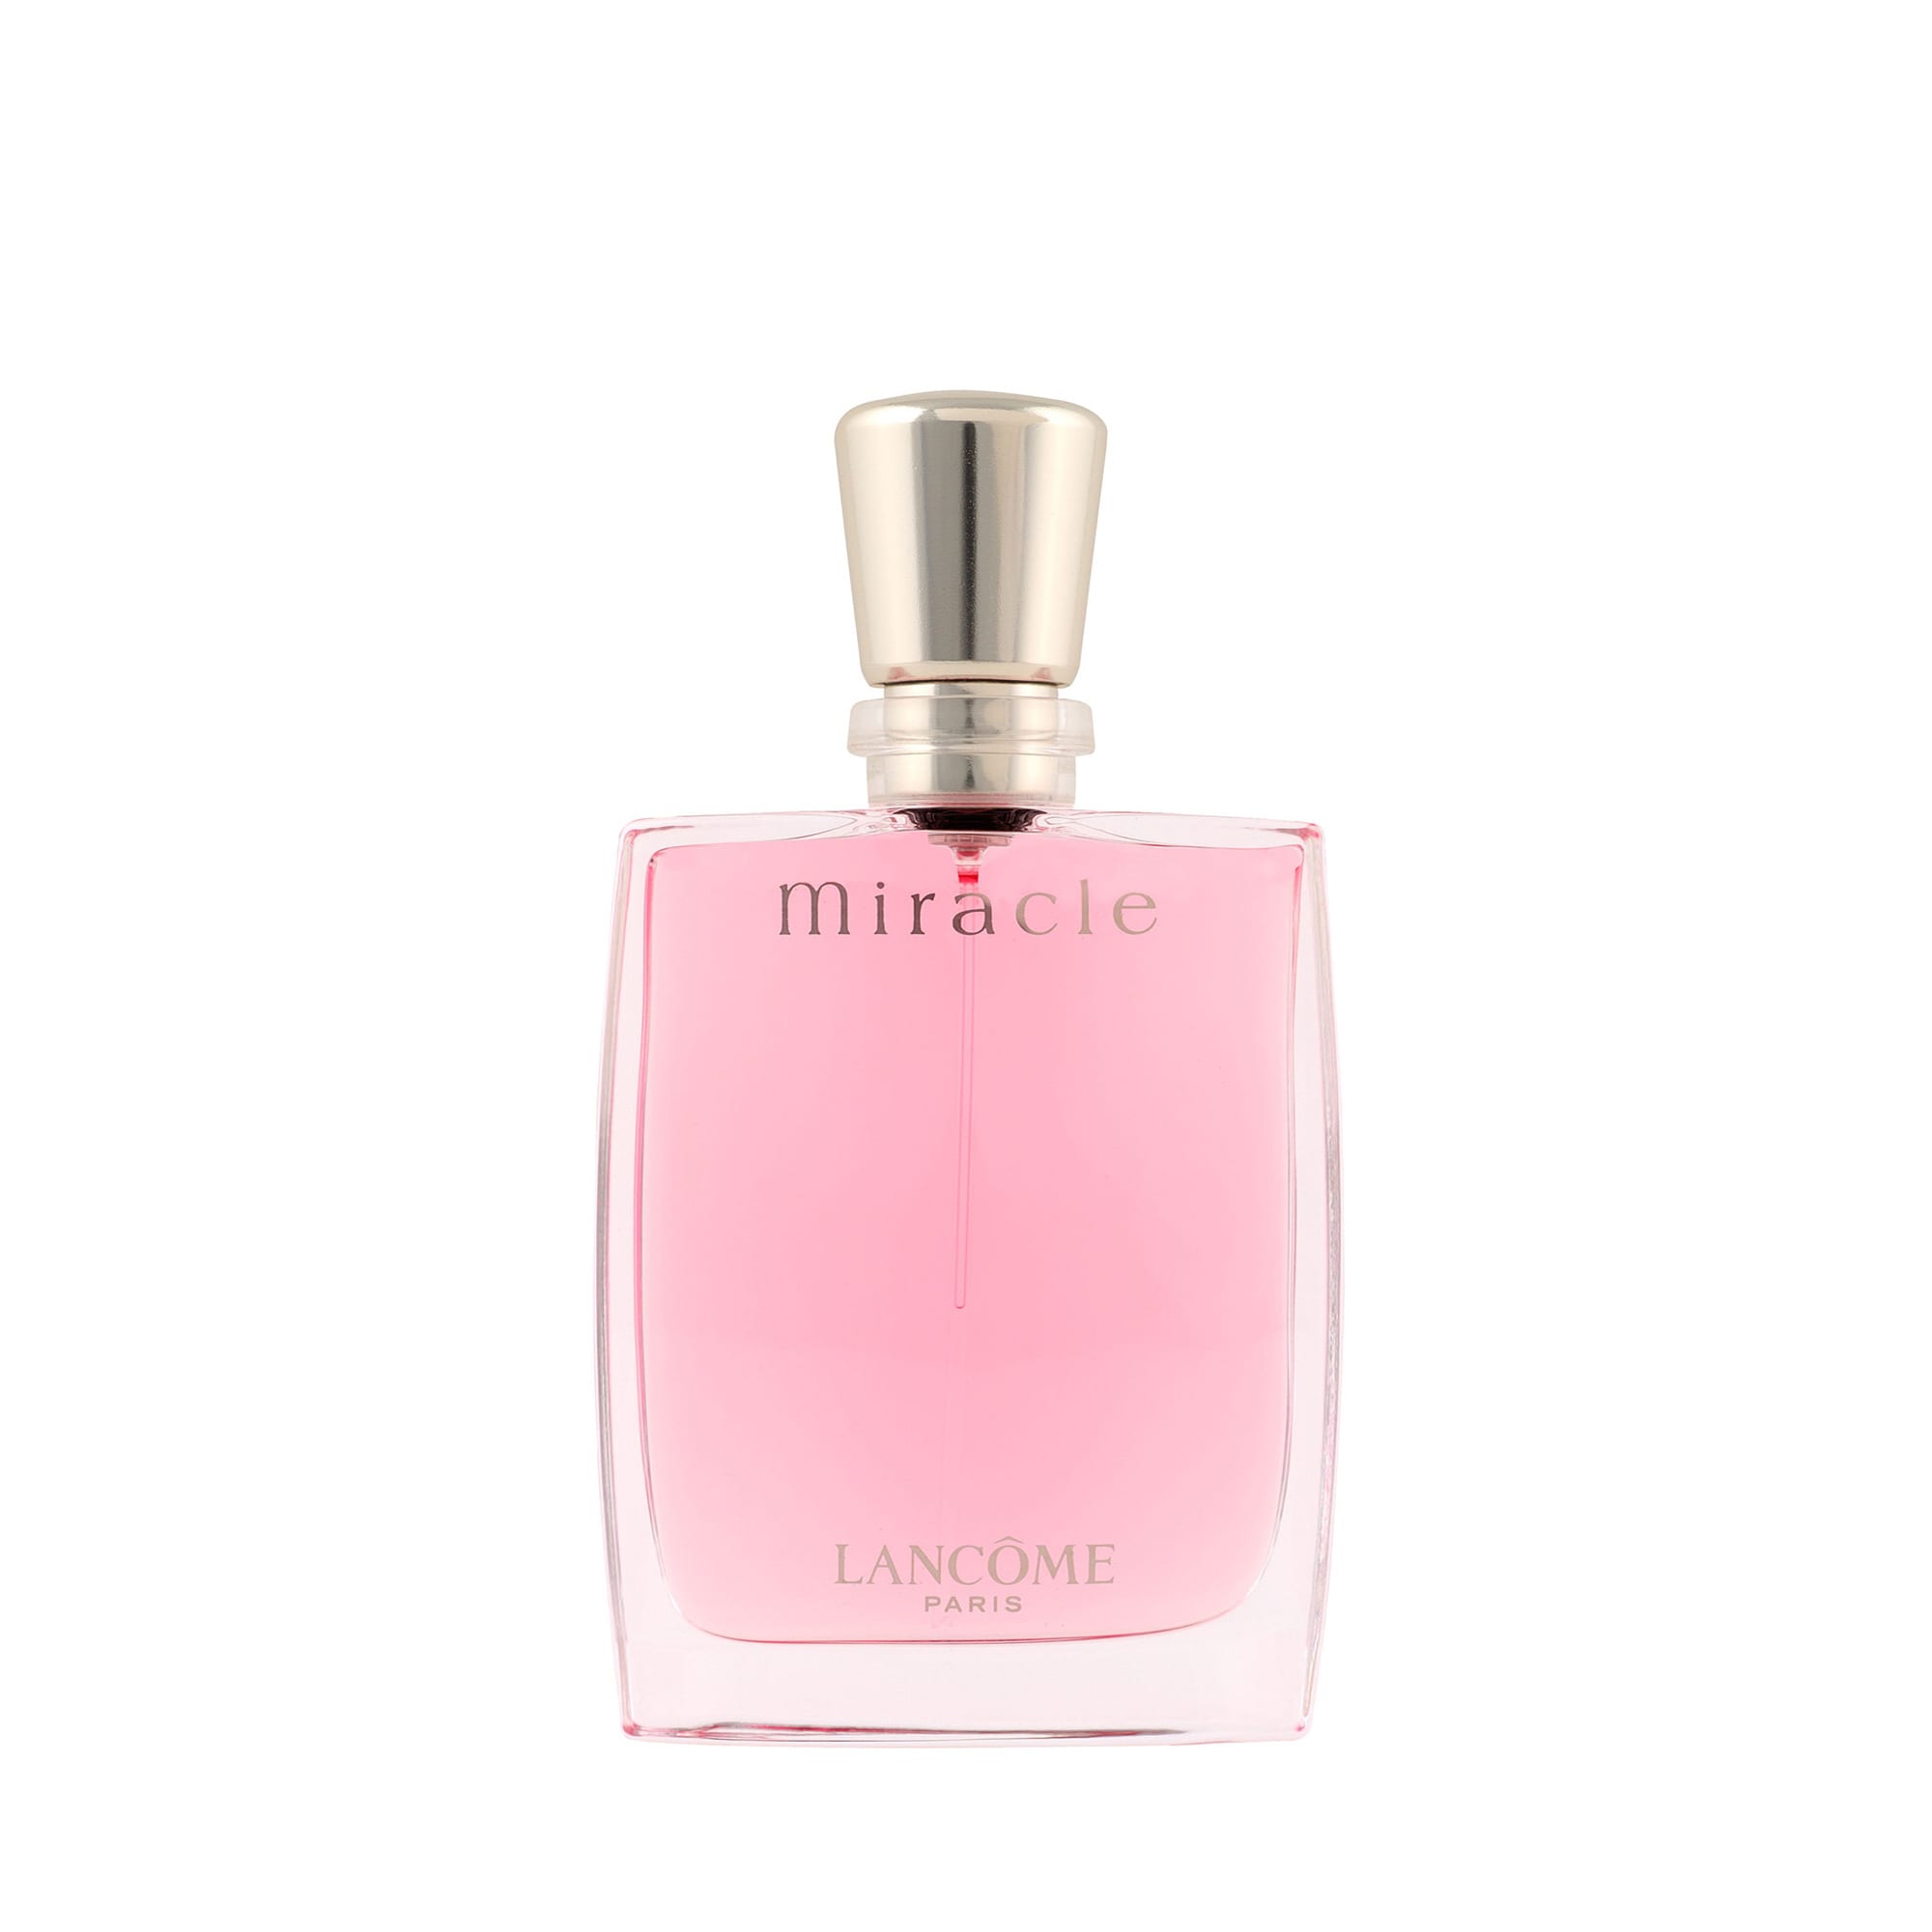 Miracle Eau de Parfum från Lancôme